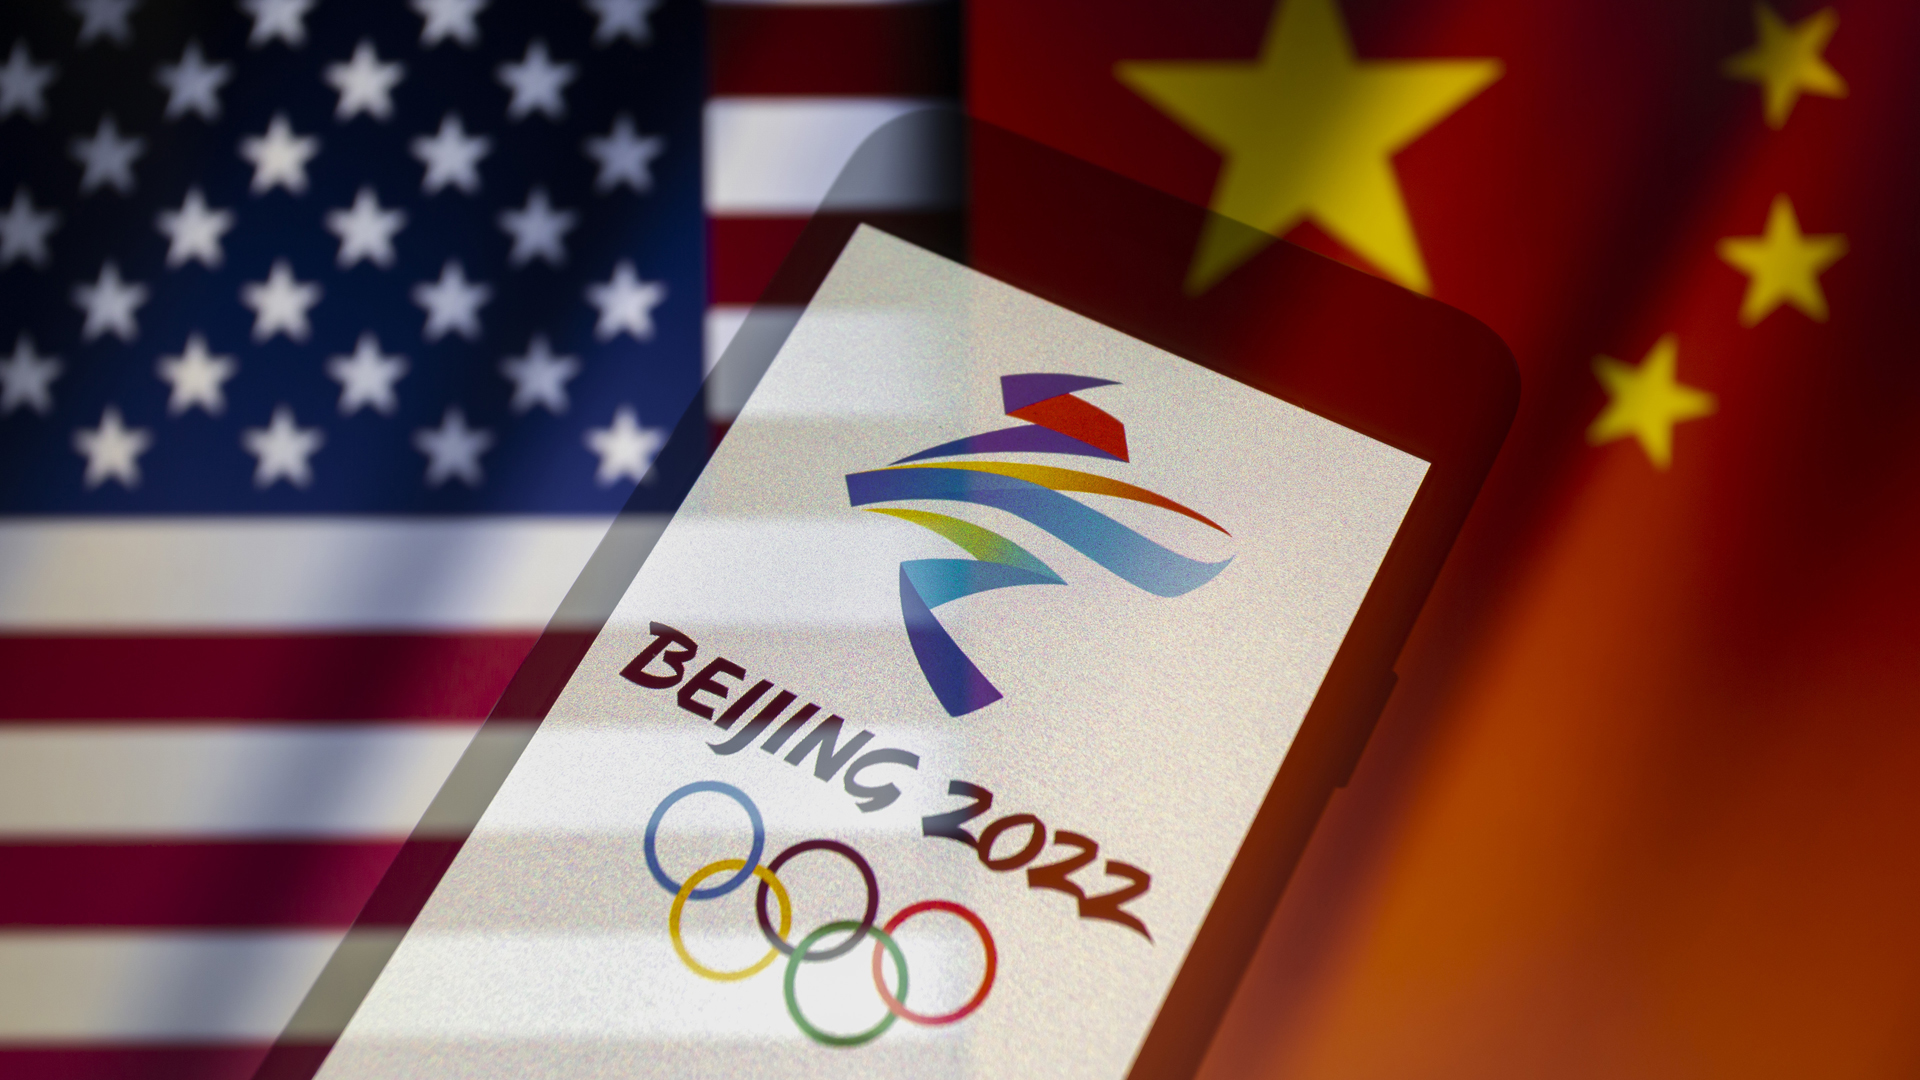 Emblem der Olympischen Winterspiele 2022 auf einem Smartphone mit den wehenden Flaggen der Vereinigten Staaten und Chinas im Hintergrund. | picture alliance / ZUMAPRESS.com